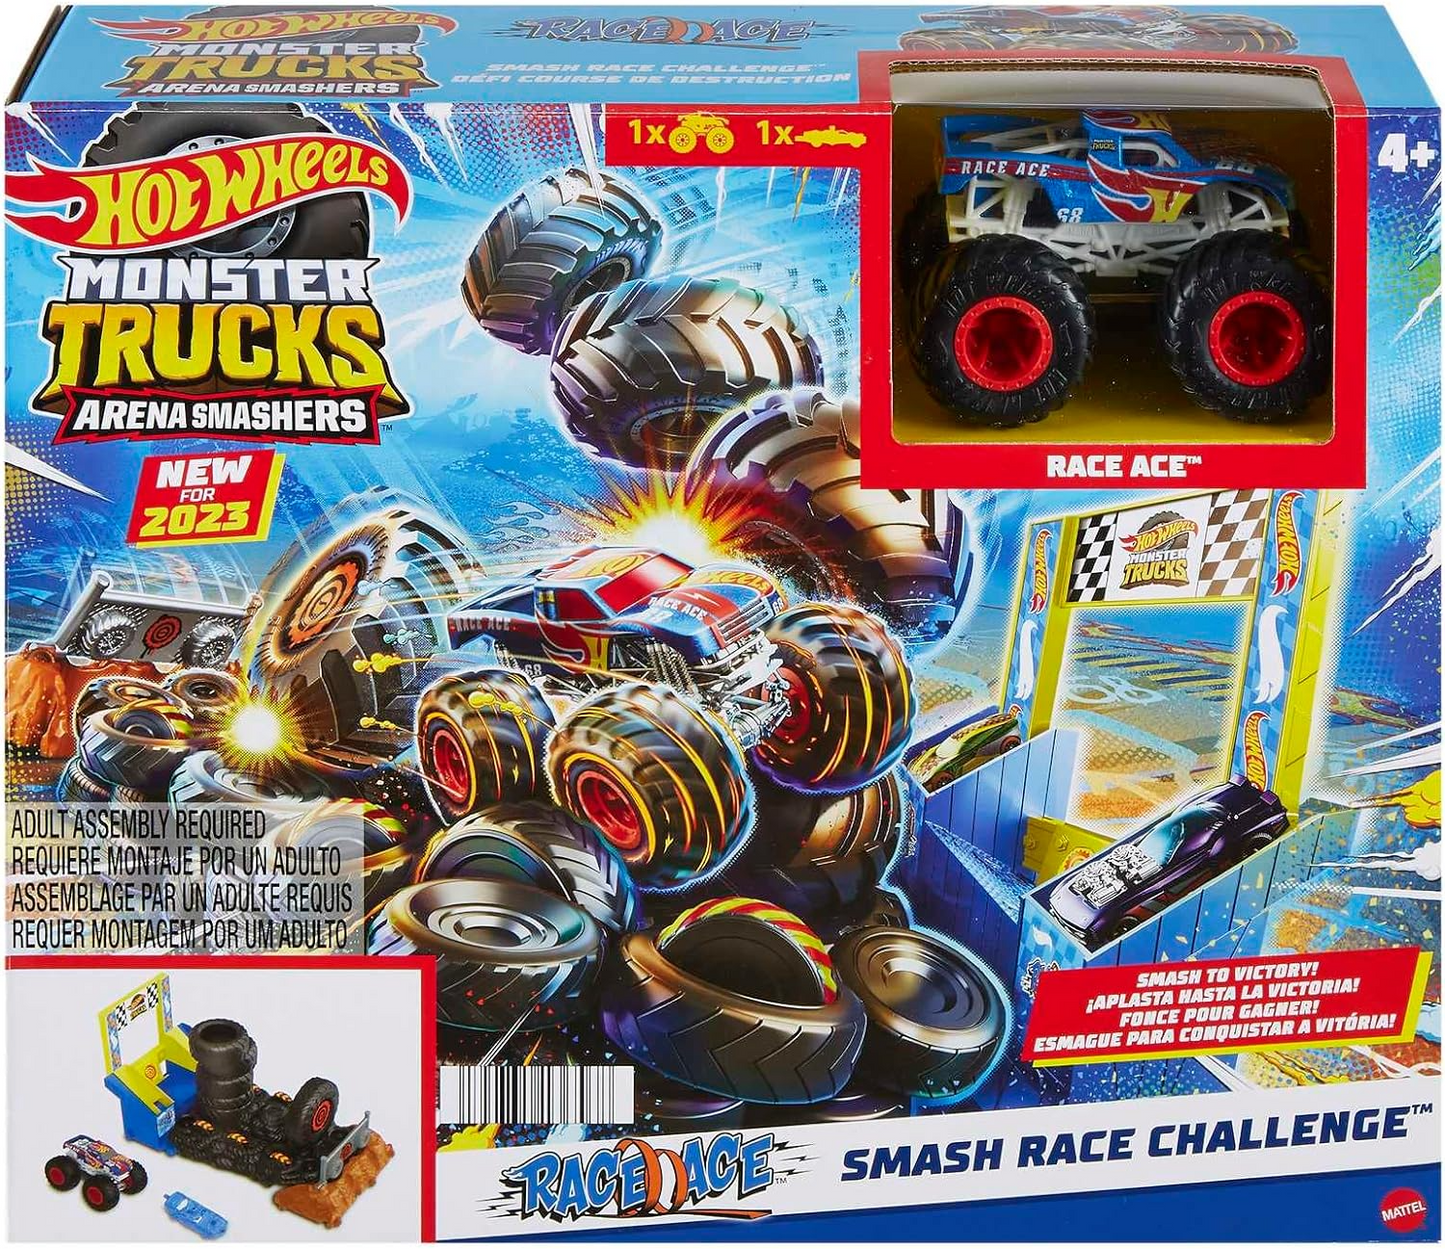 Hot Wheels Monster Trucks Arena Smashers Race Ace Smash Race Challenge Playset com caminhão de brinquedo Race Ace em escala 1:64 e 1 carro esmagável, HNB89